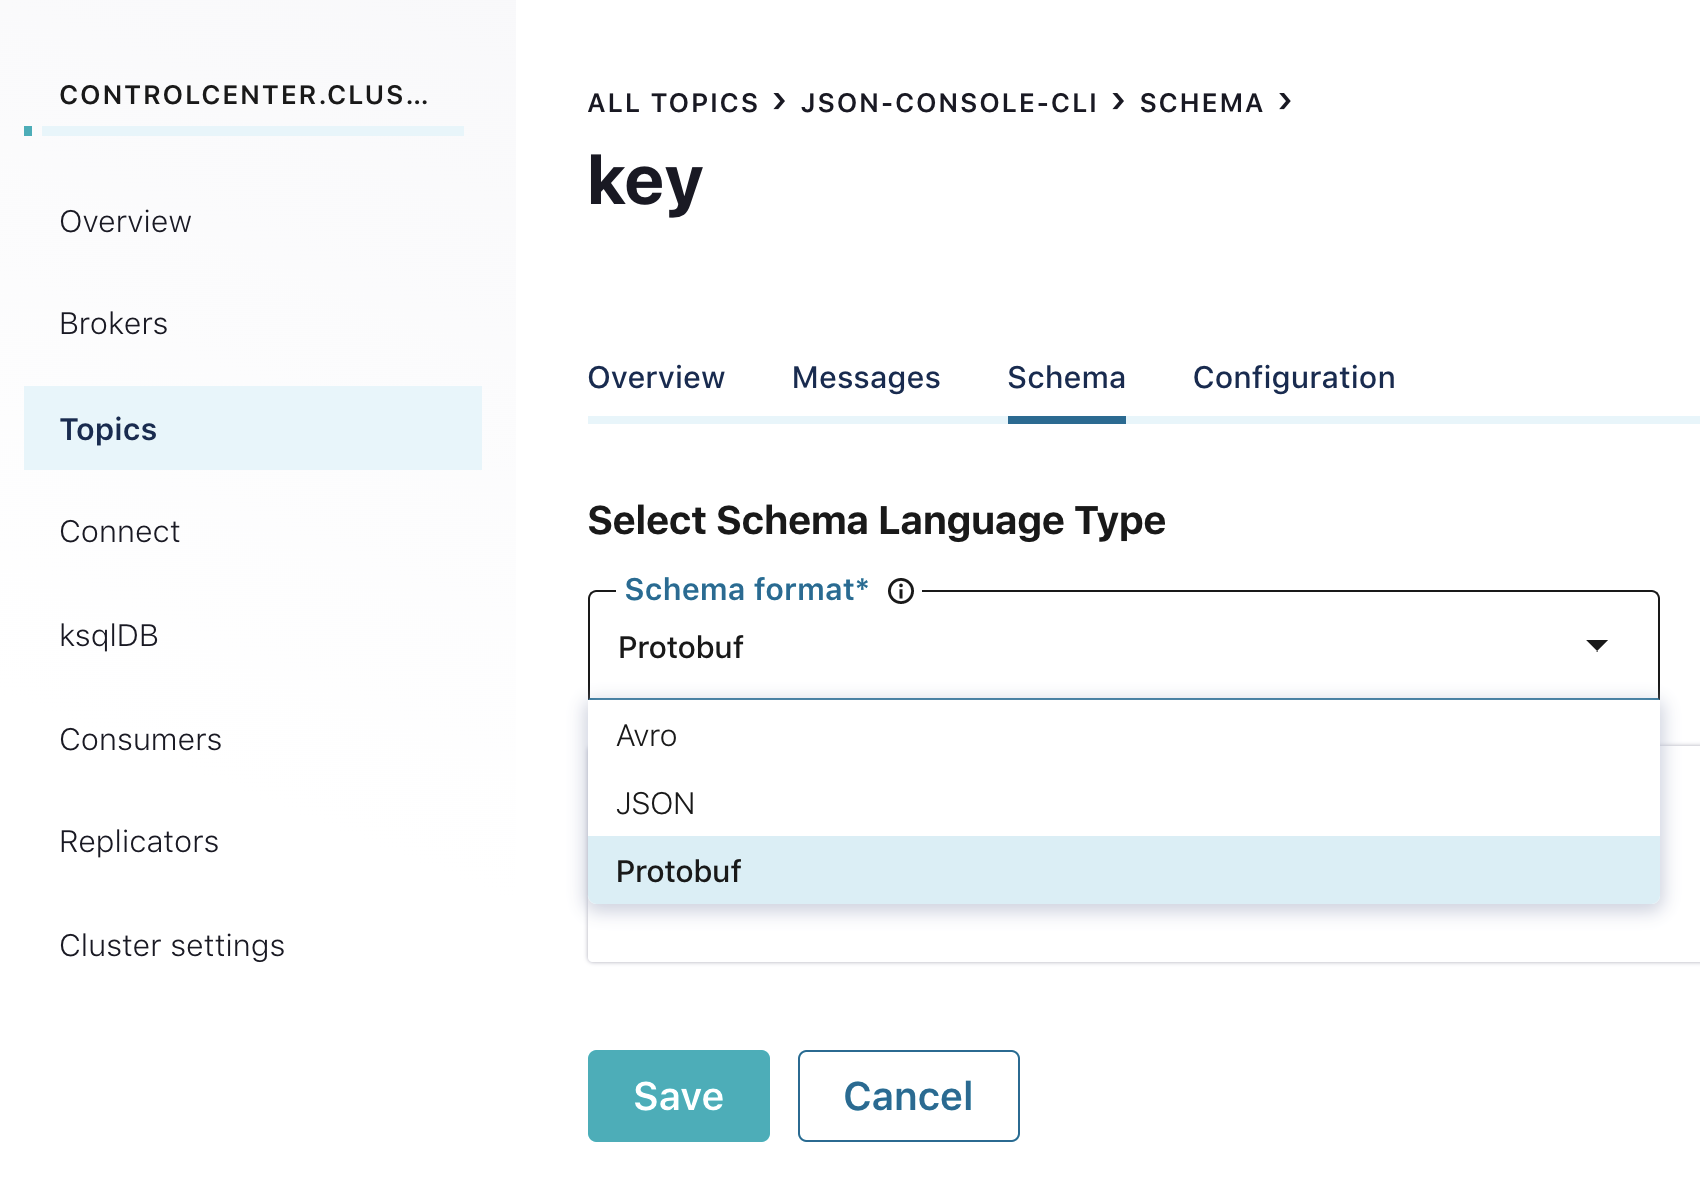 Select Schema Language Type | Schema Format*